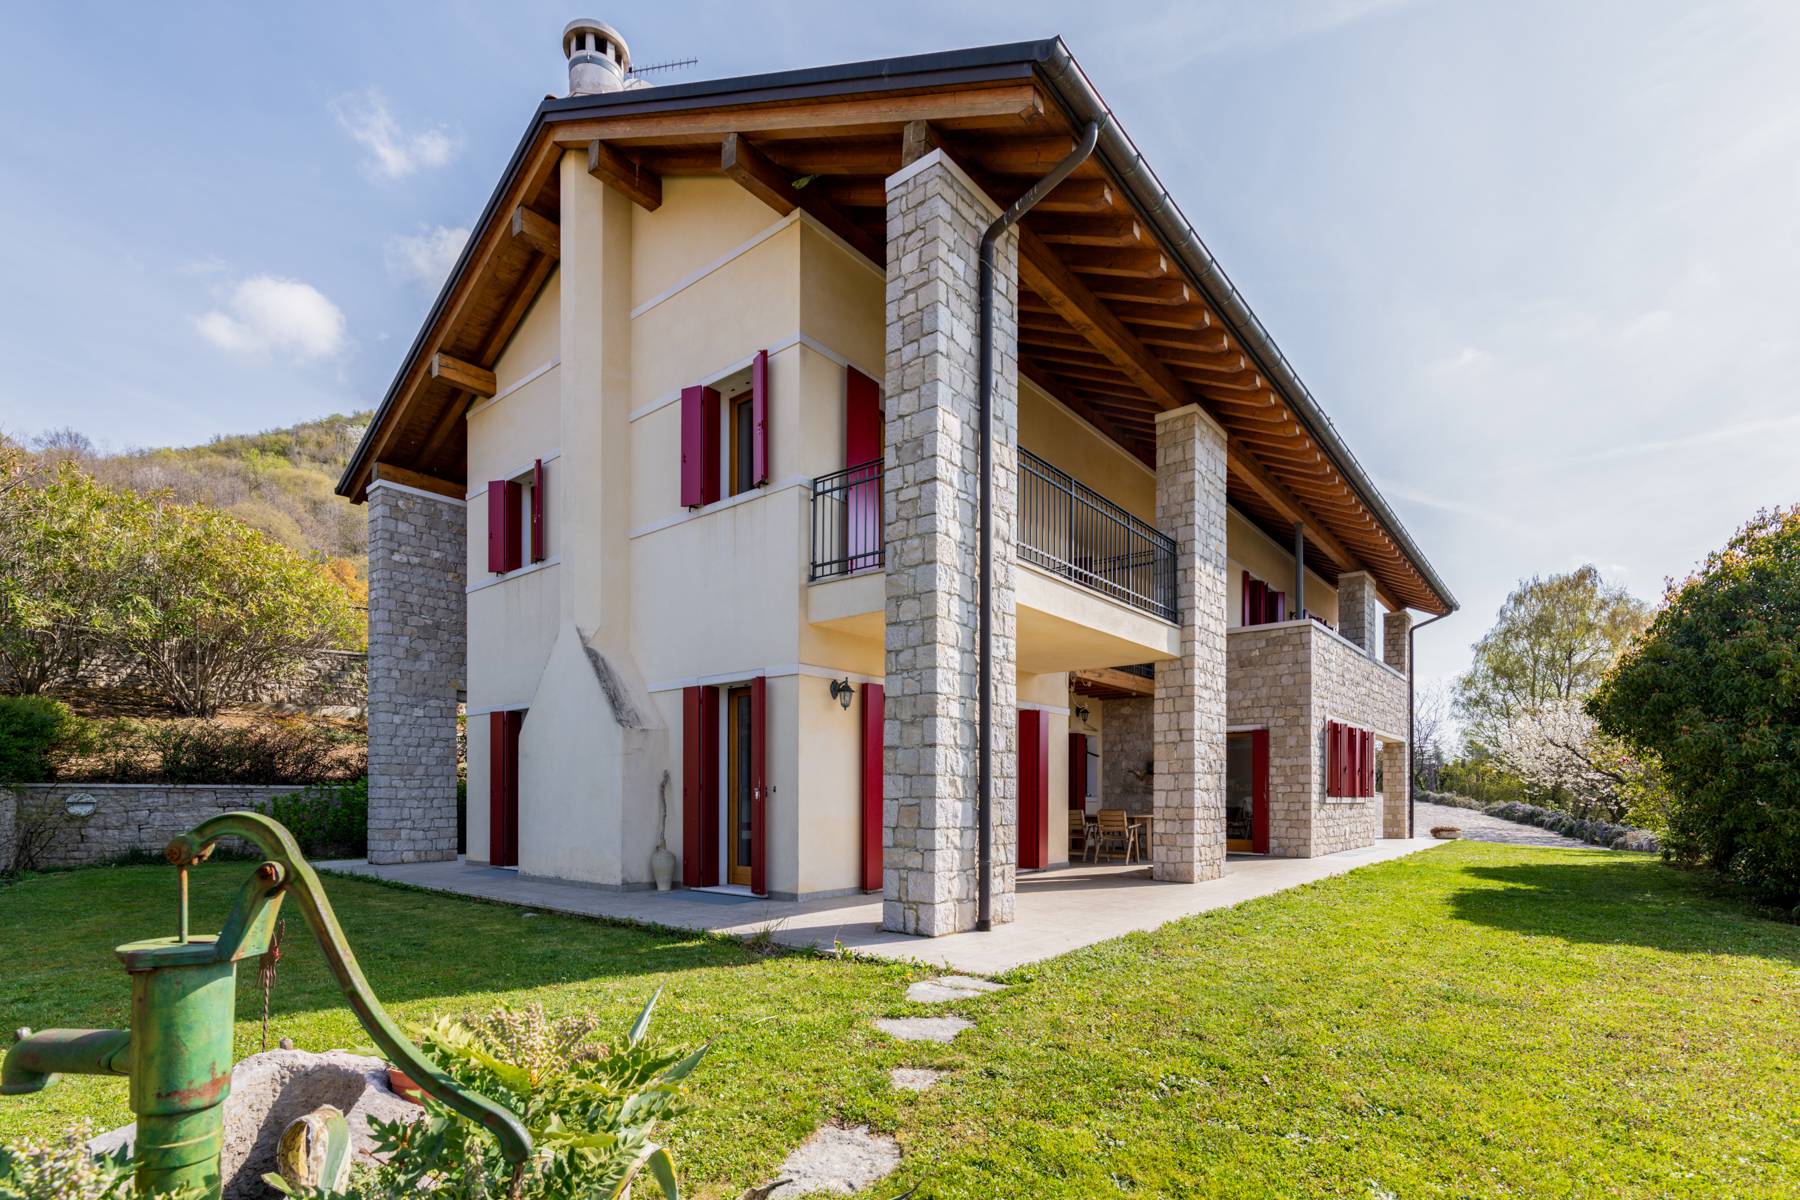 Villa in Vendita a Cison Di Valmarino: 5 locali, 600 mq - Foto 1